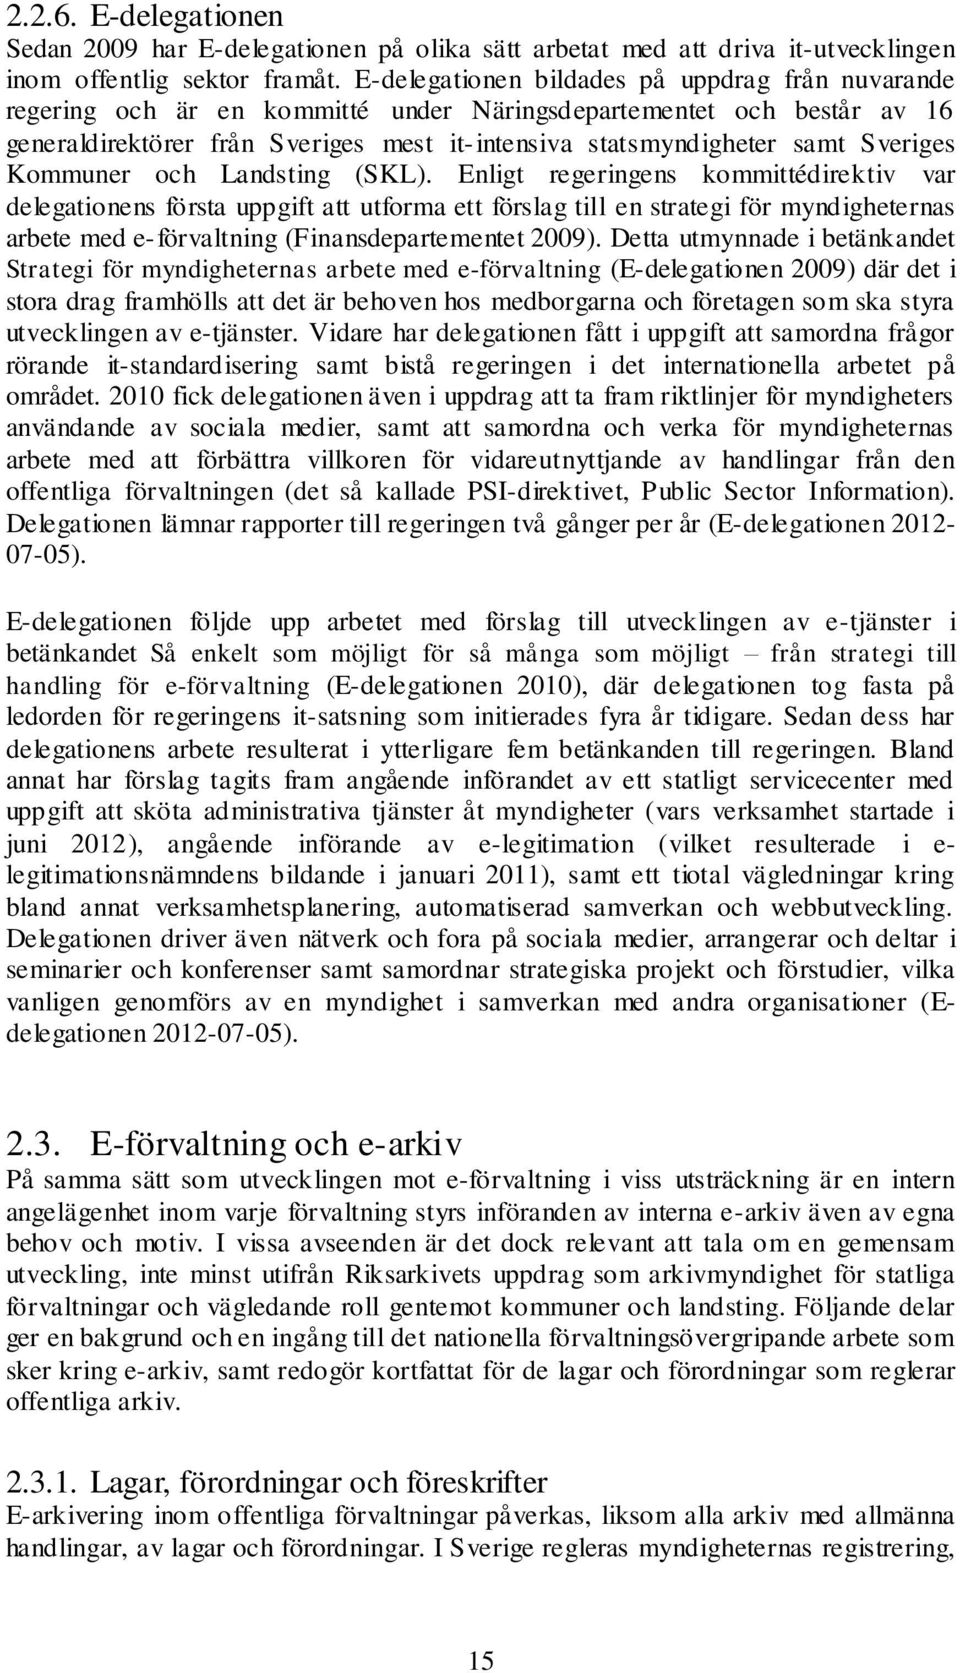 Sveriges Kommuner och Landsting (SKL).